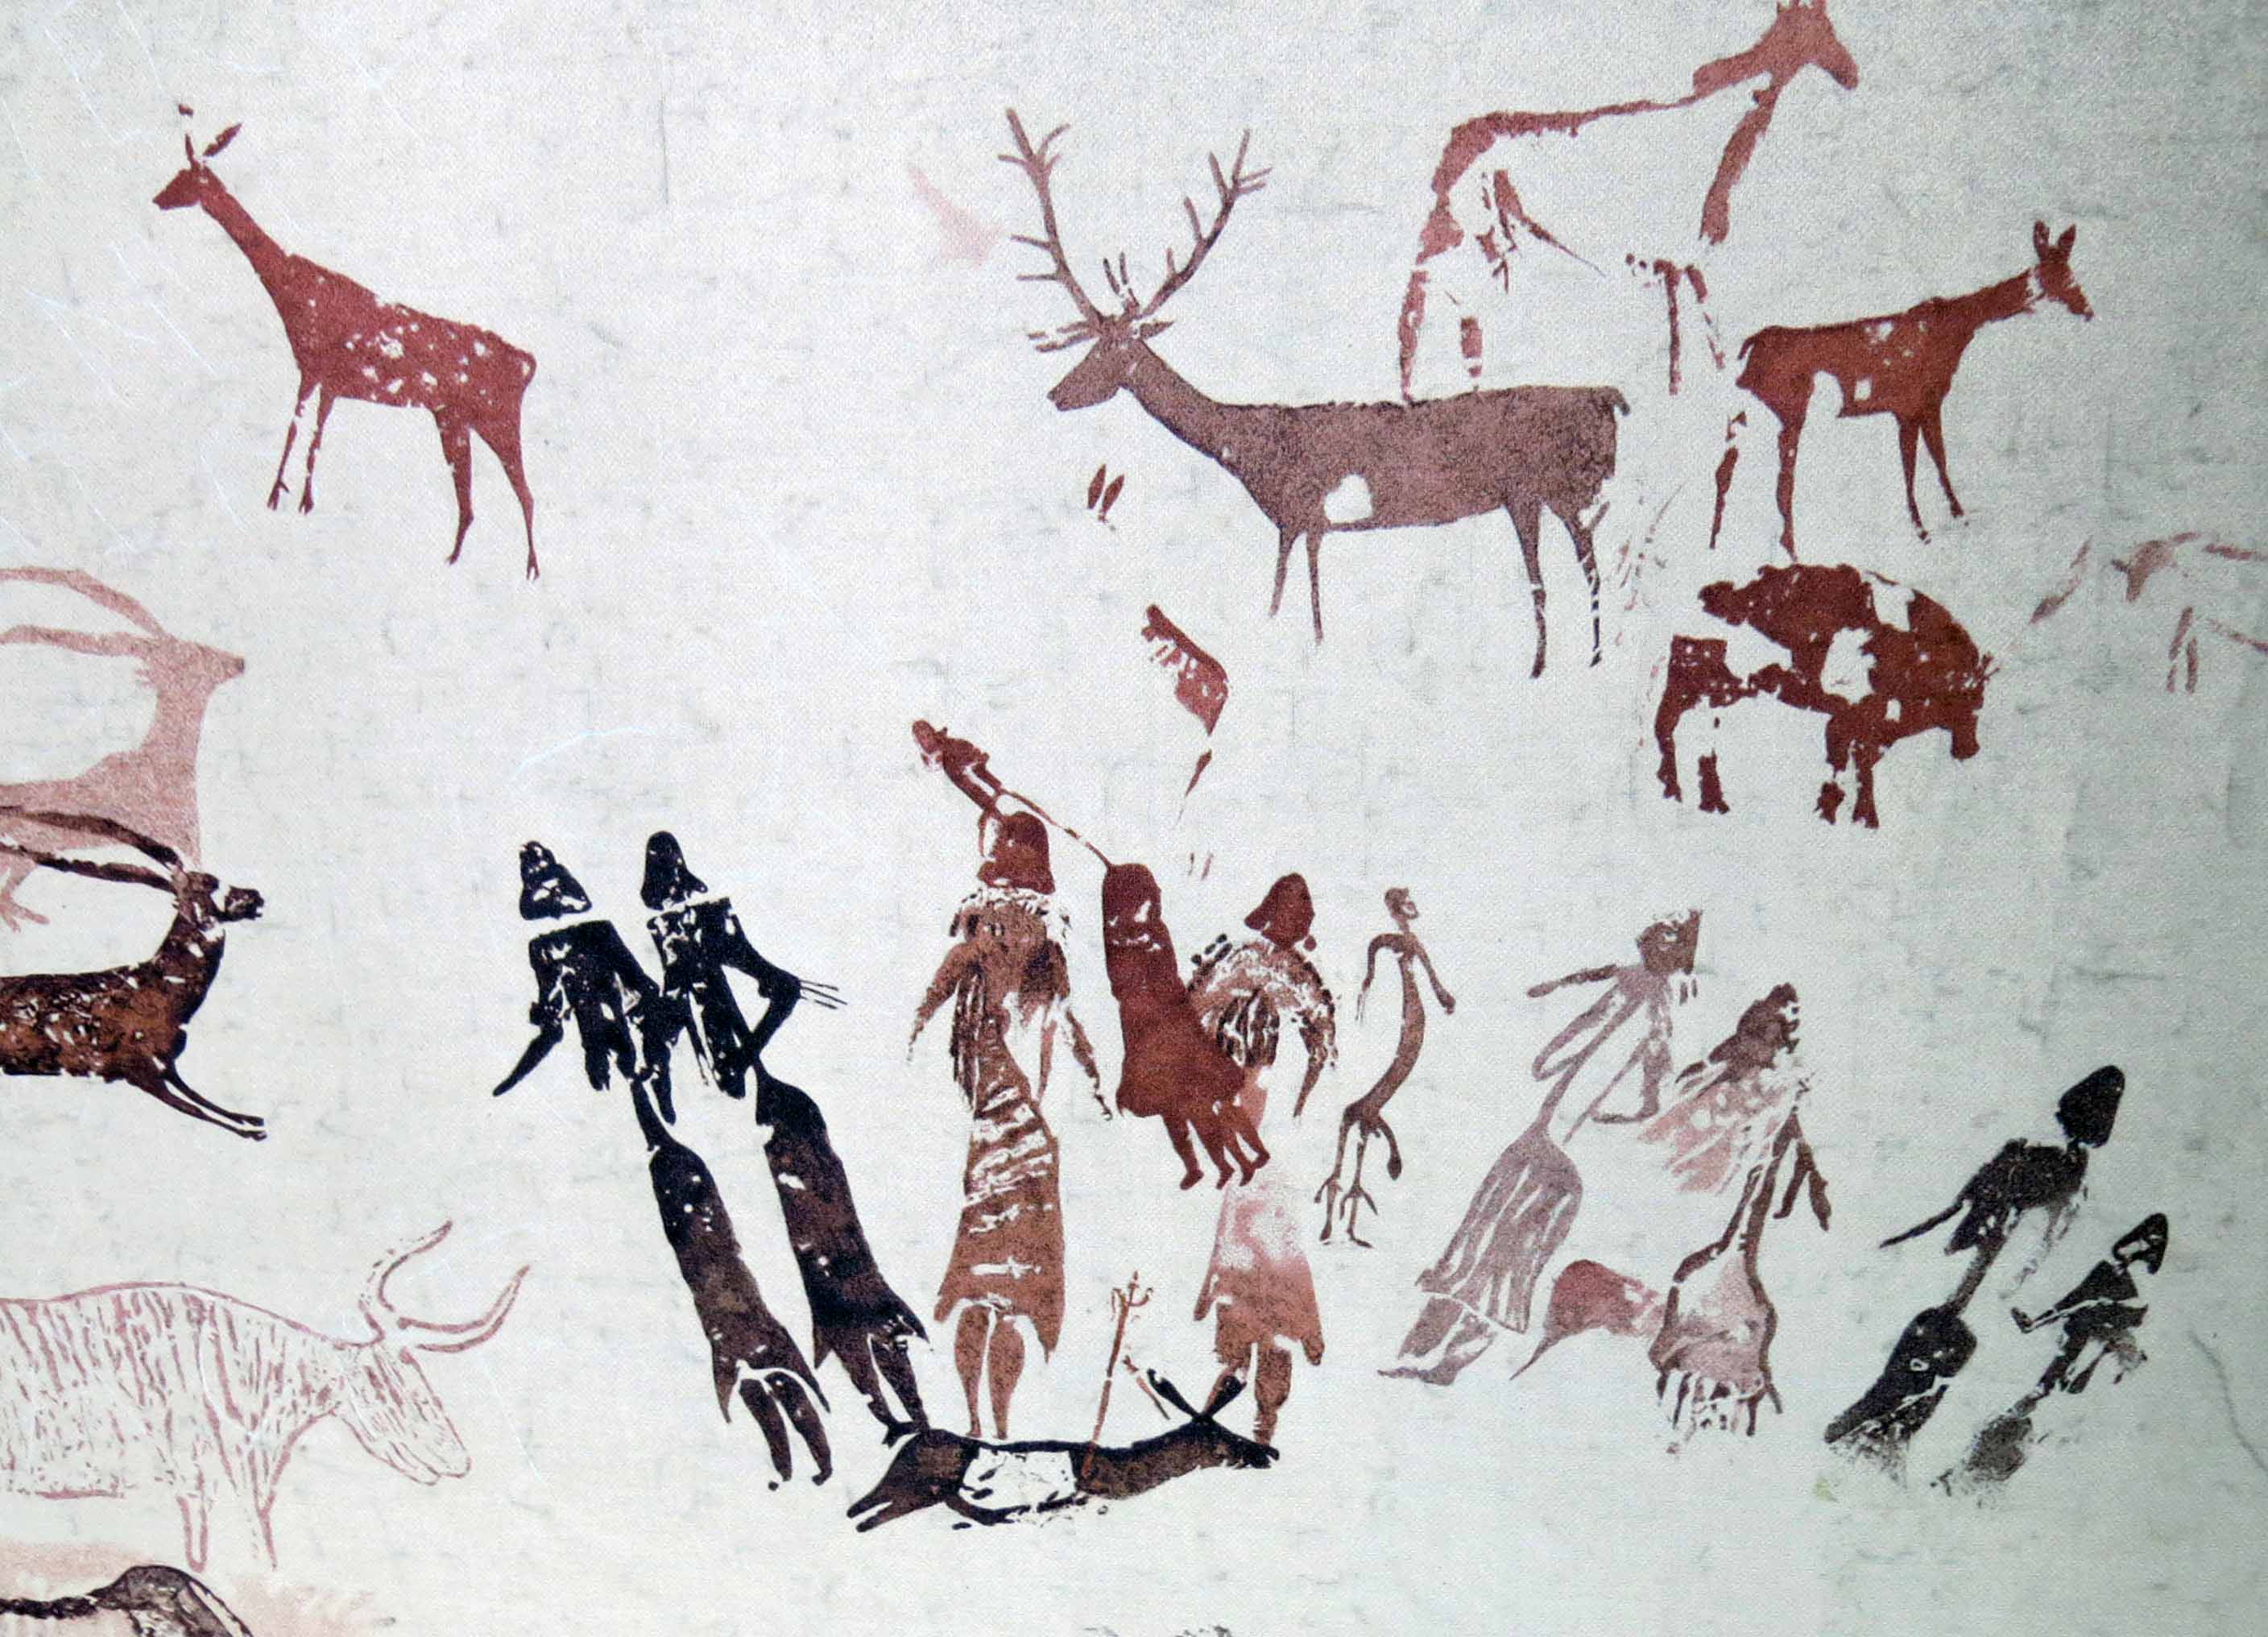 pinturas-rupestres-roca-dels-moros-cogul-wikipedia-org.JPG 